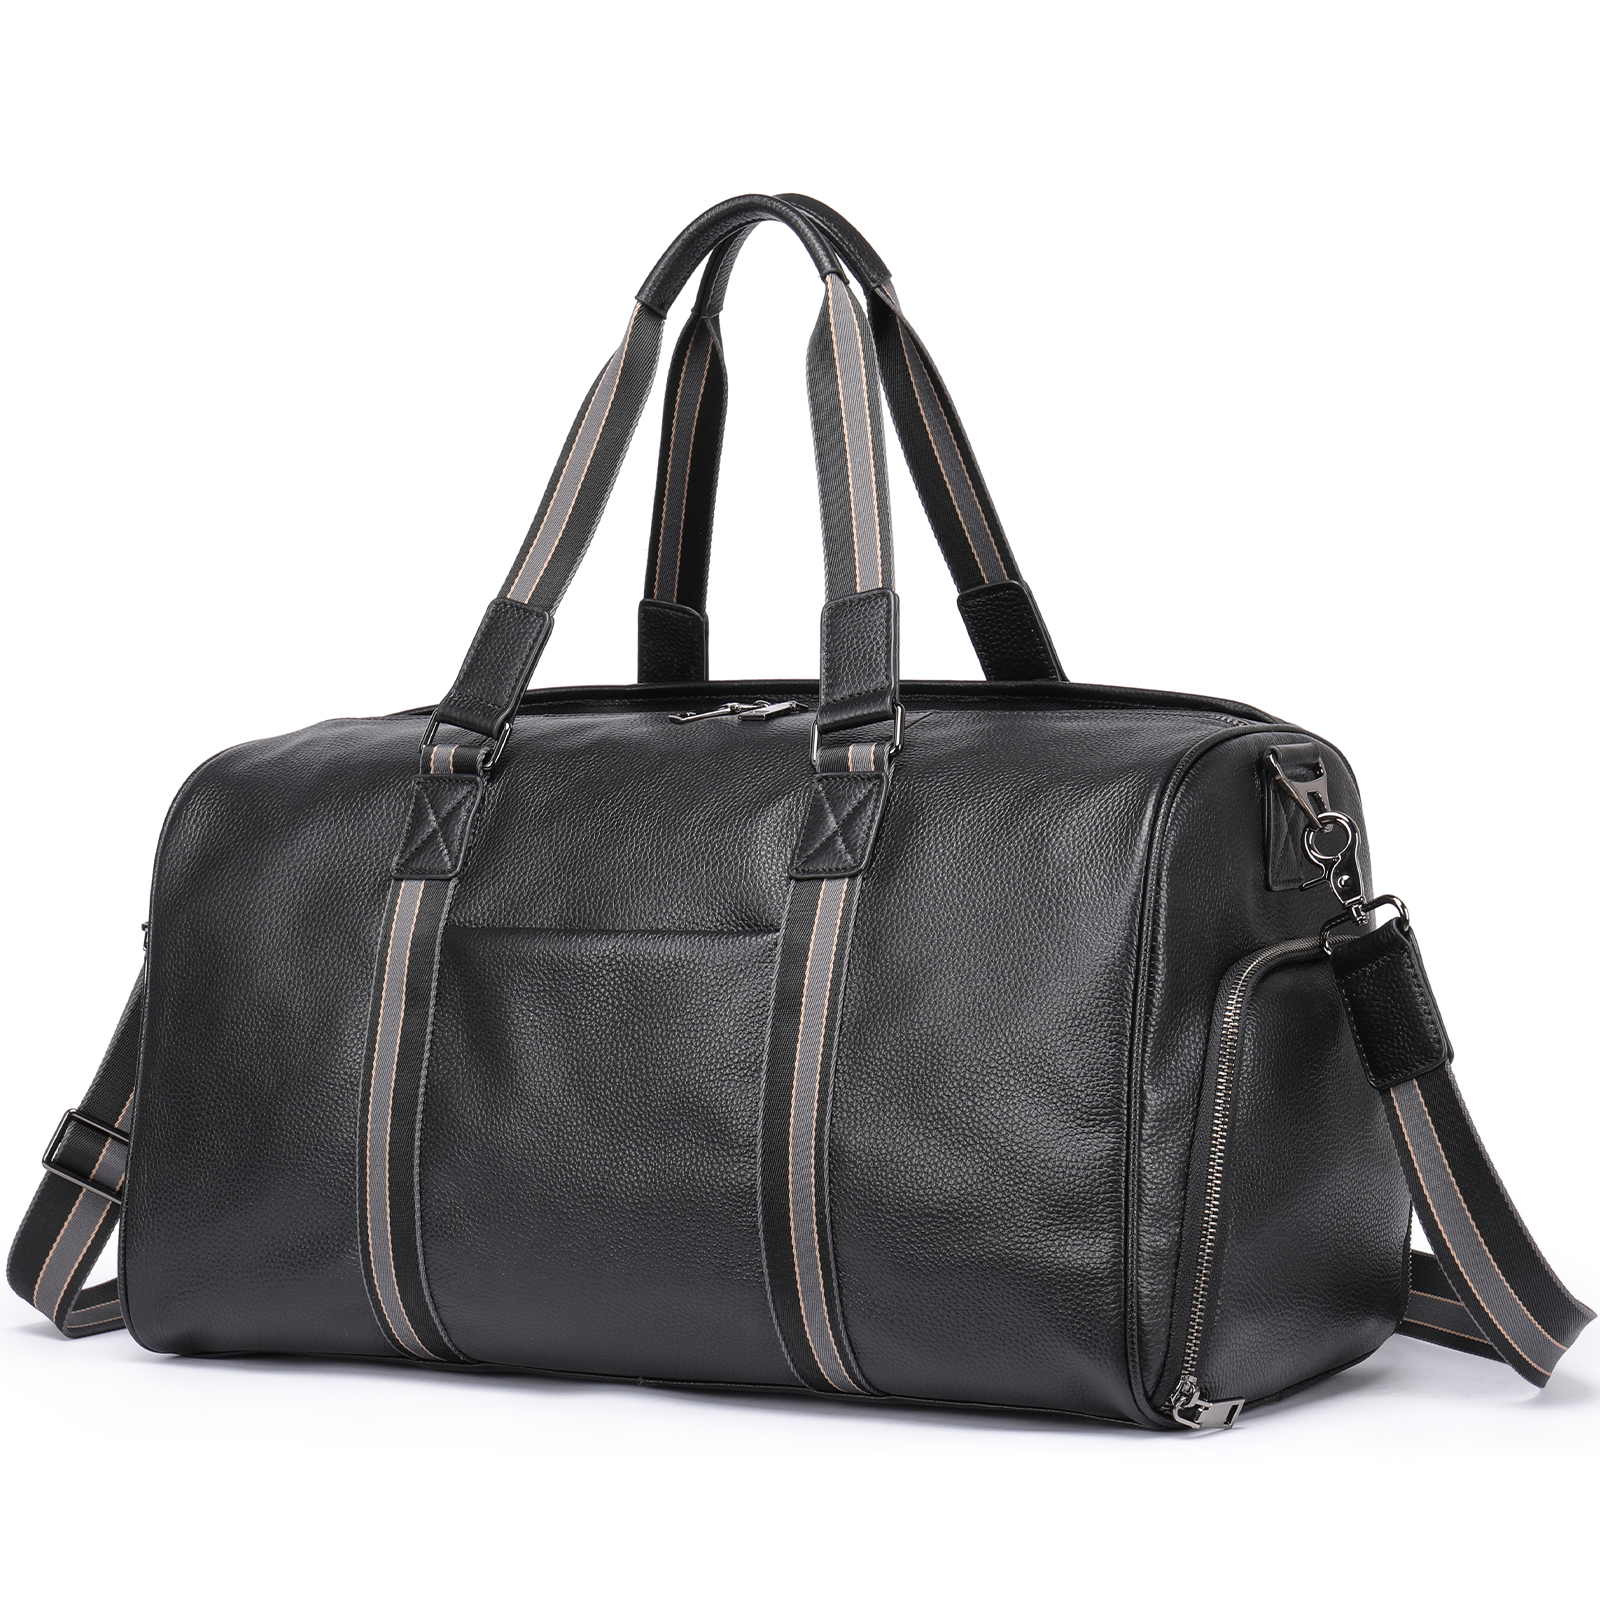 Дорожная сумка мужская FAUSTINI 4014 черная, 29х45х19 см